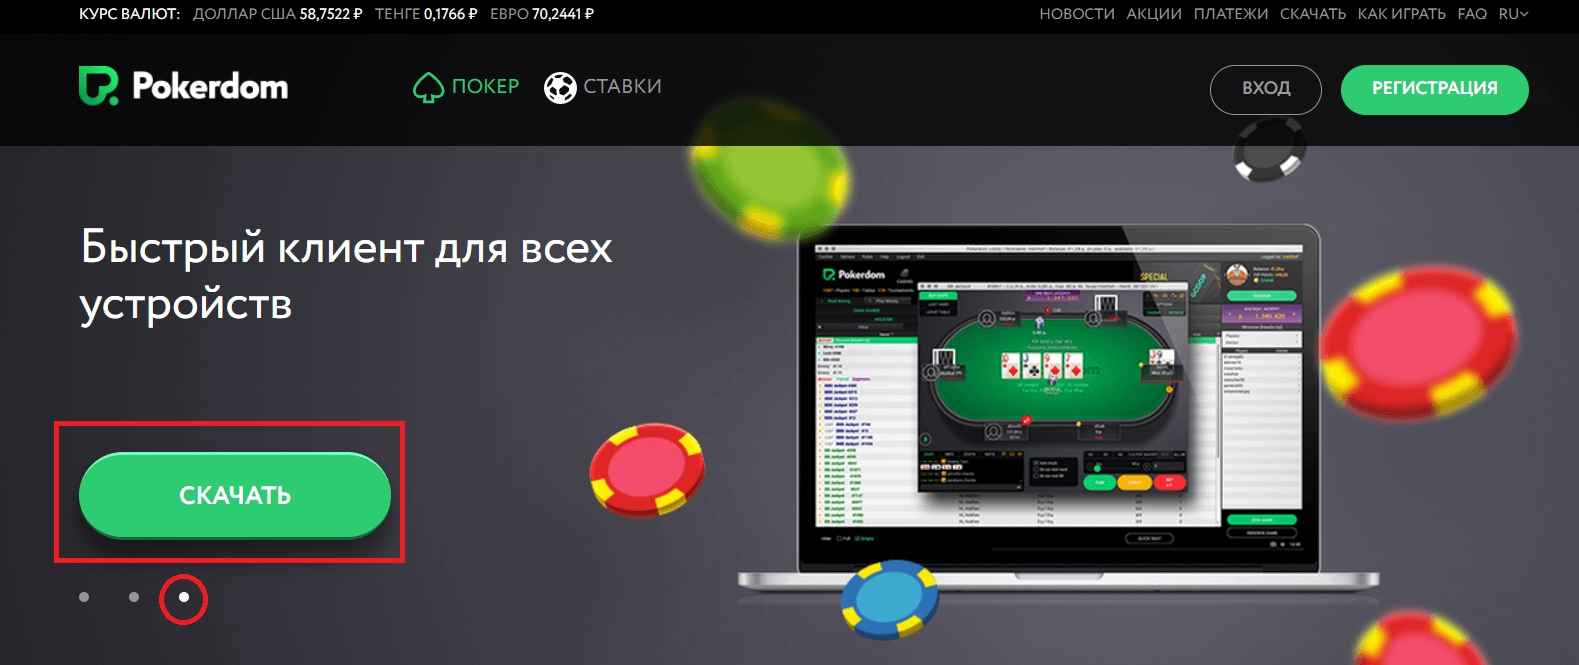 Скачать покердом на андроид зеркало бесплатно азино777 официальный сайт лучшее казино онлайн казино